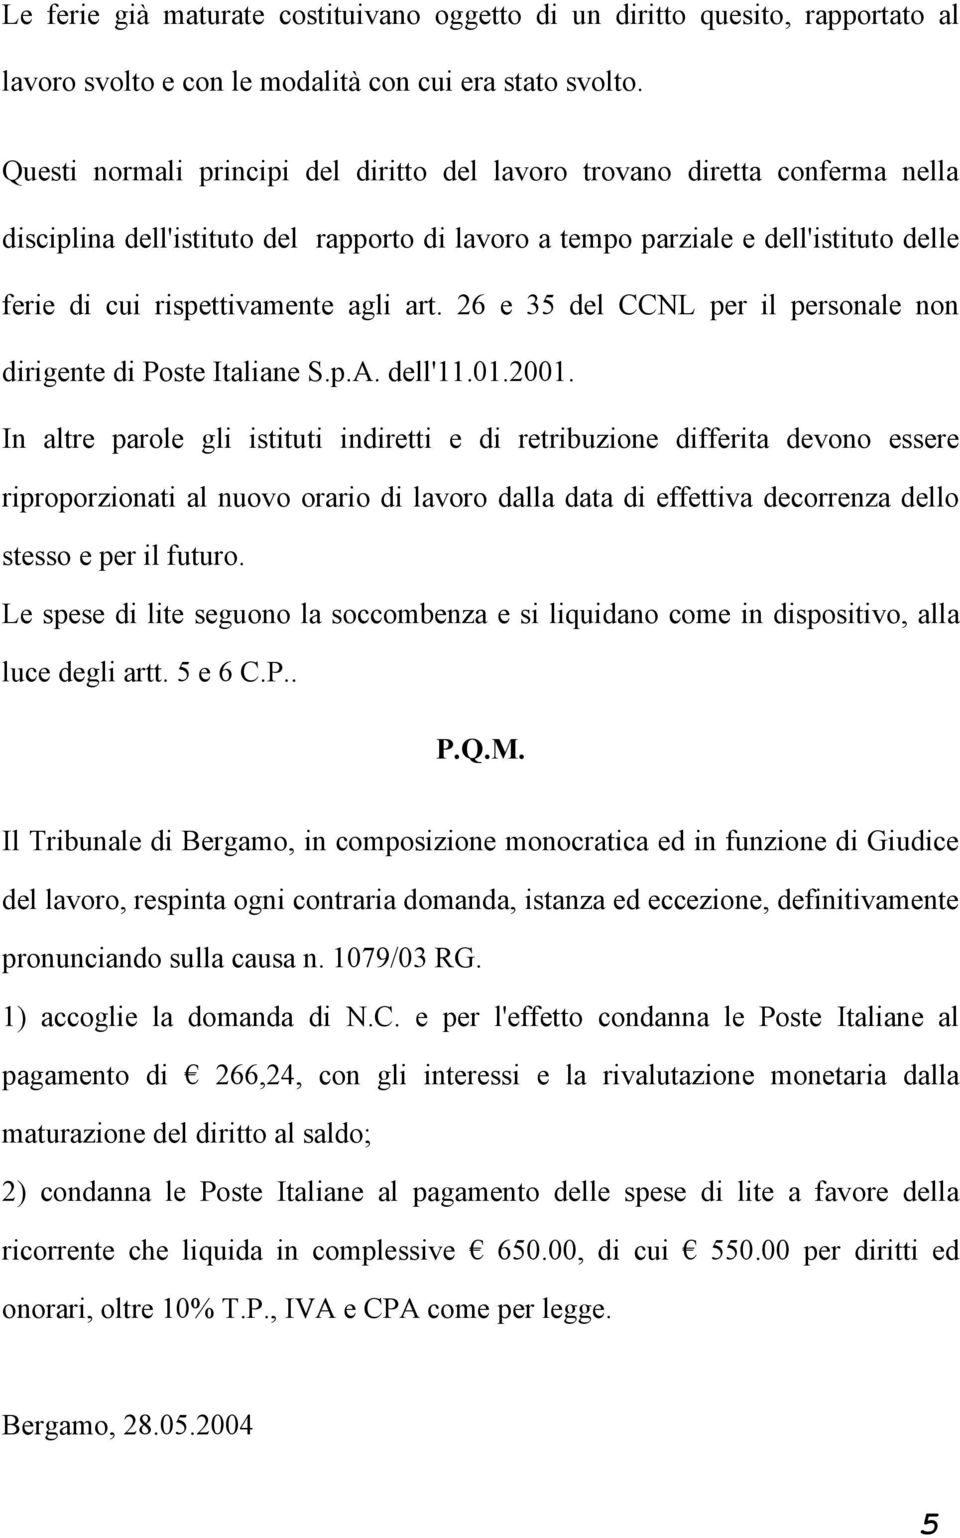 art. 26 e 35 del CCNL per il personale non dirigente di Poste Italiane S.p.A. dell'11.01.2001.